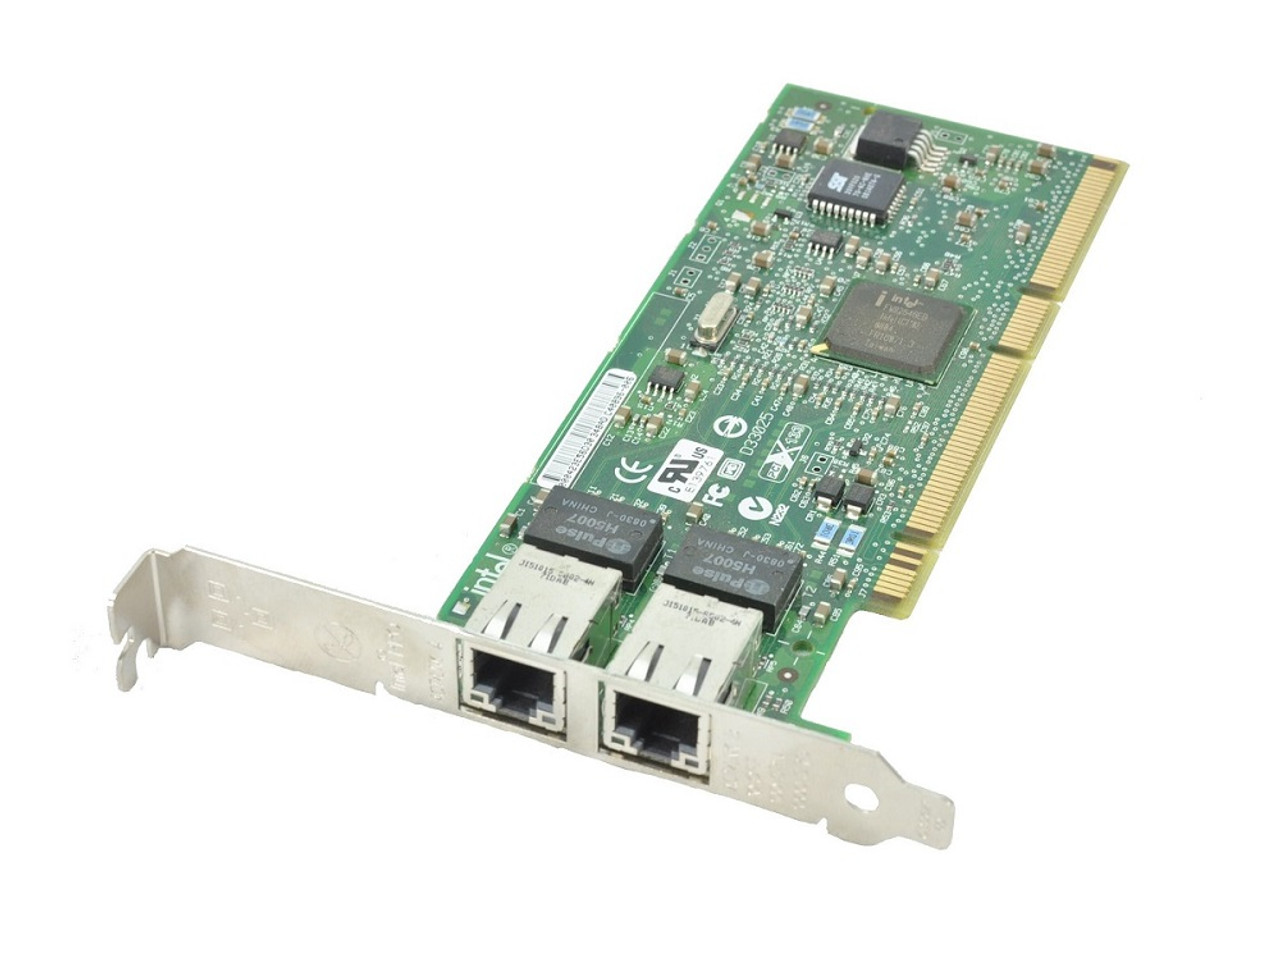 FC5010409-23 - Sun StorageTek 8GB/s PCI-Express Fiber Channel 2-Port Express Module Host Bus Adapter